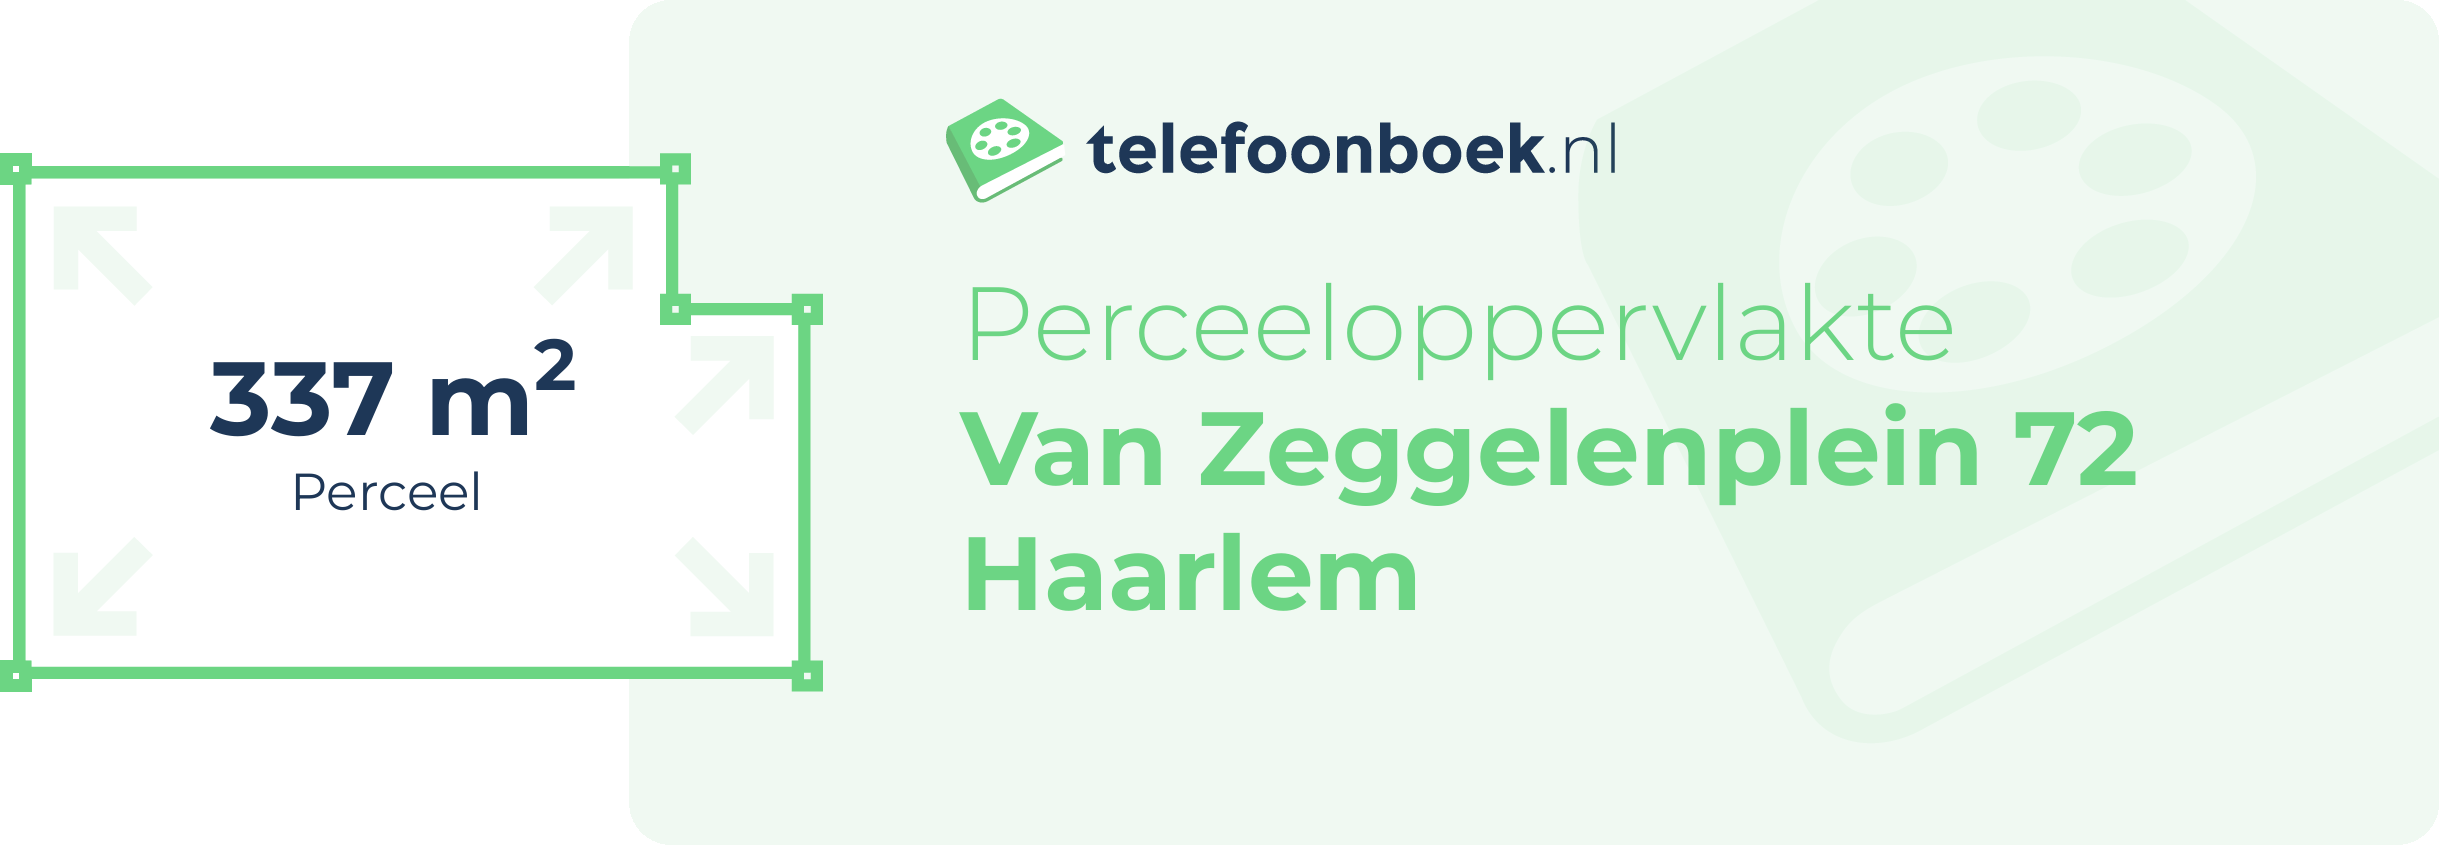 Perceeloppervlakte Van Zeggelenplein 72 Haarlem